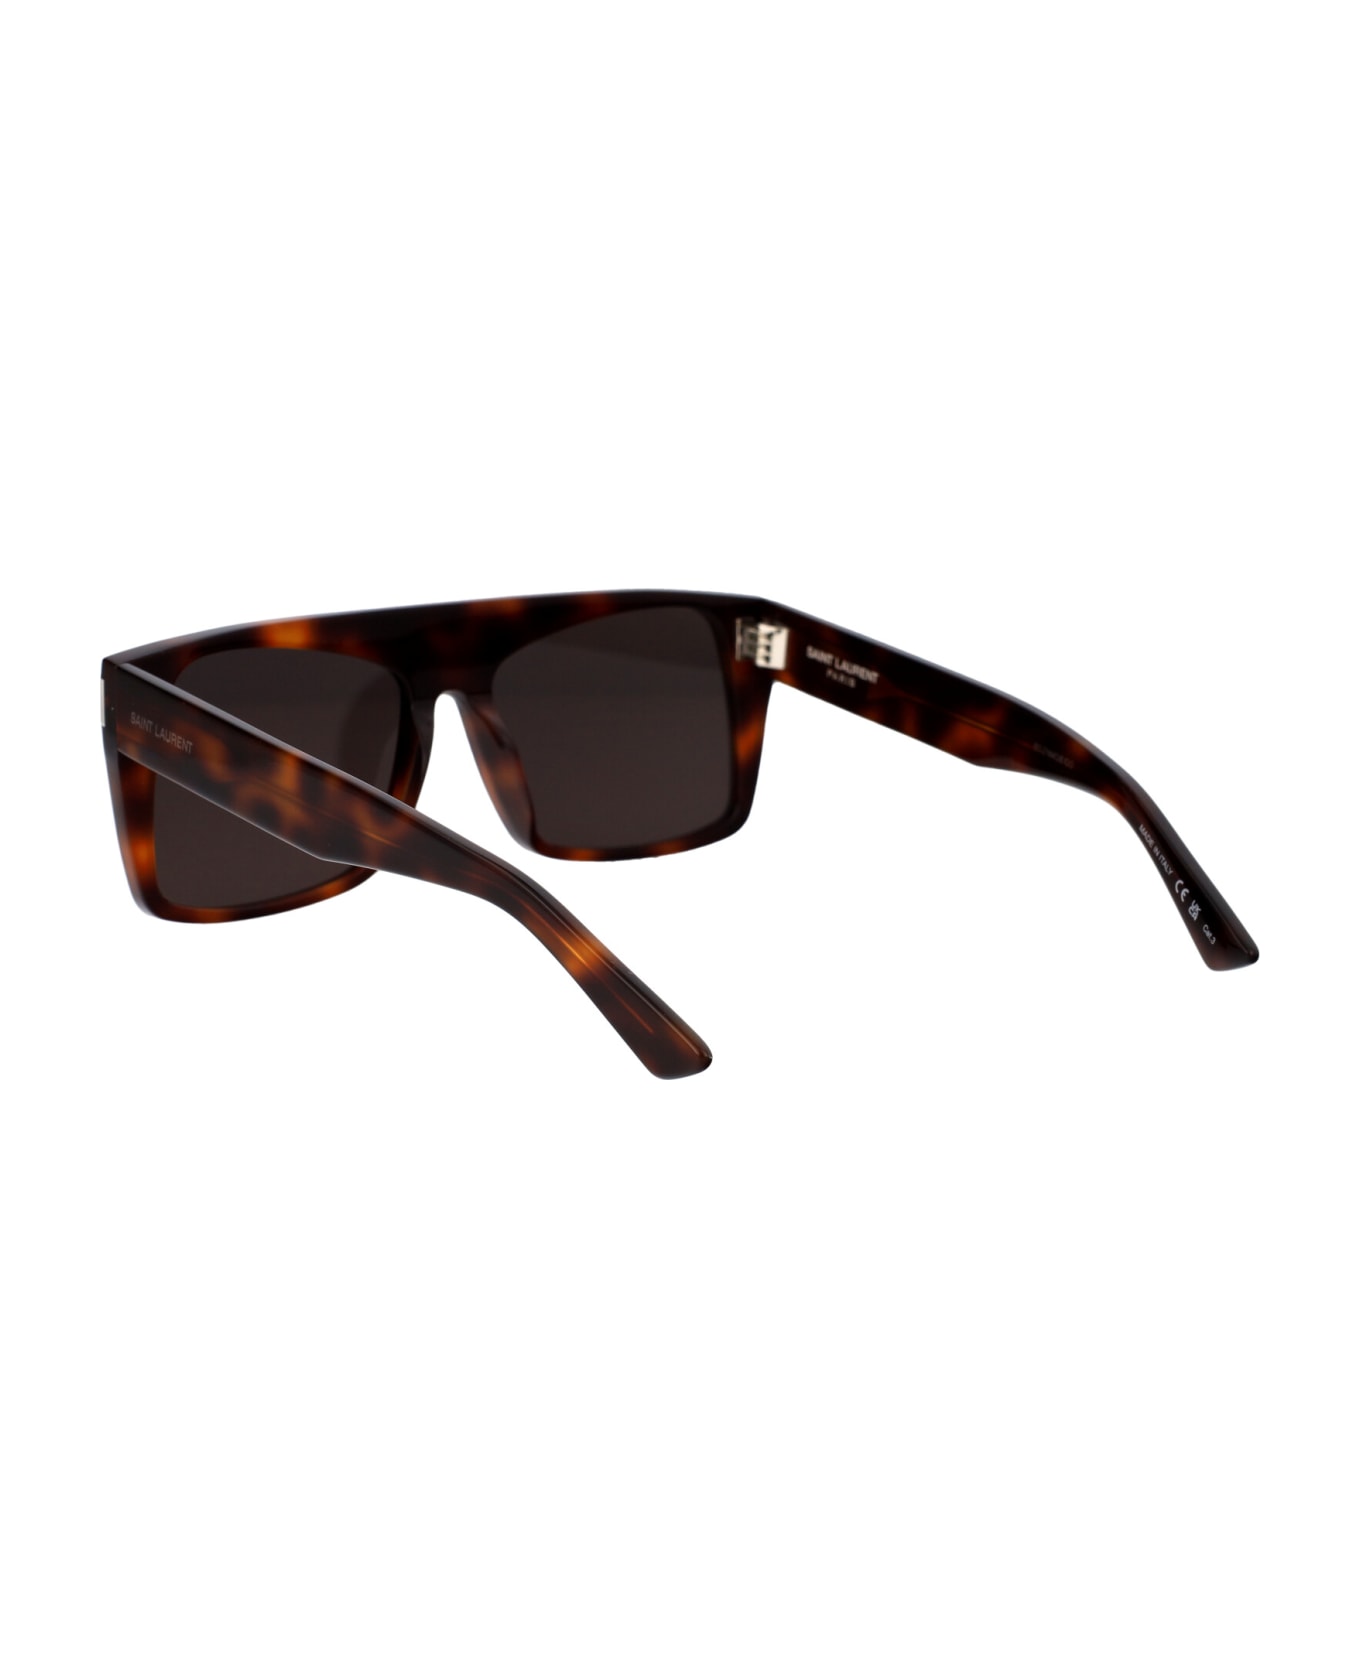 Saint Laurent Eyewear Sl 651 Vitti Sunglasses - 003 HAVANA HAVANA BLACK